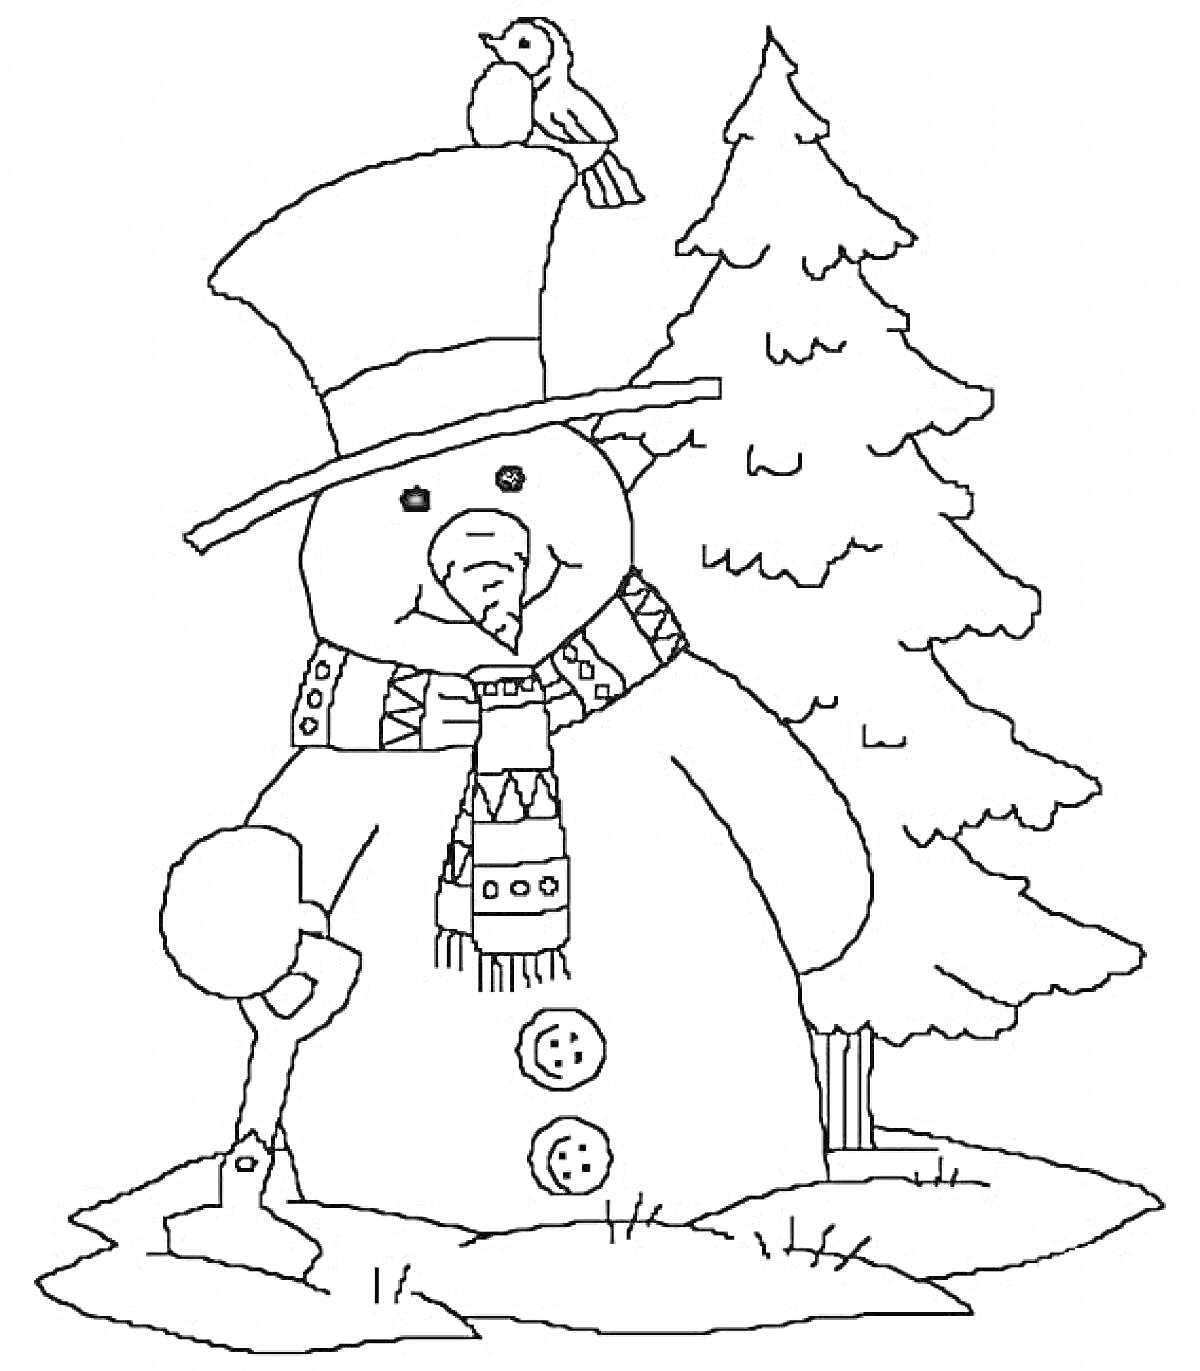 Раскраска Снеговик с лопатой и птицей на шляпе рядом с ёлкой